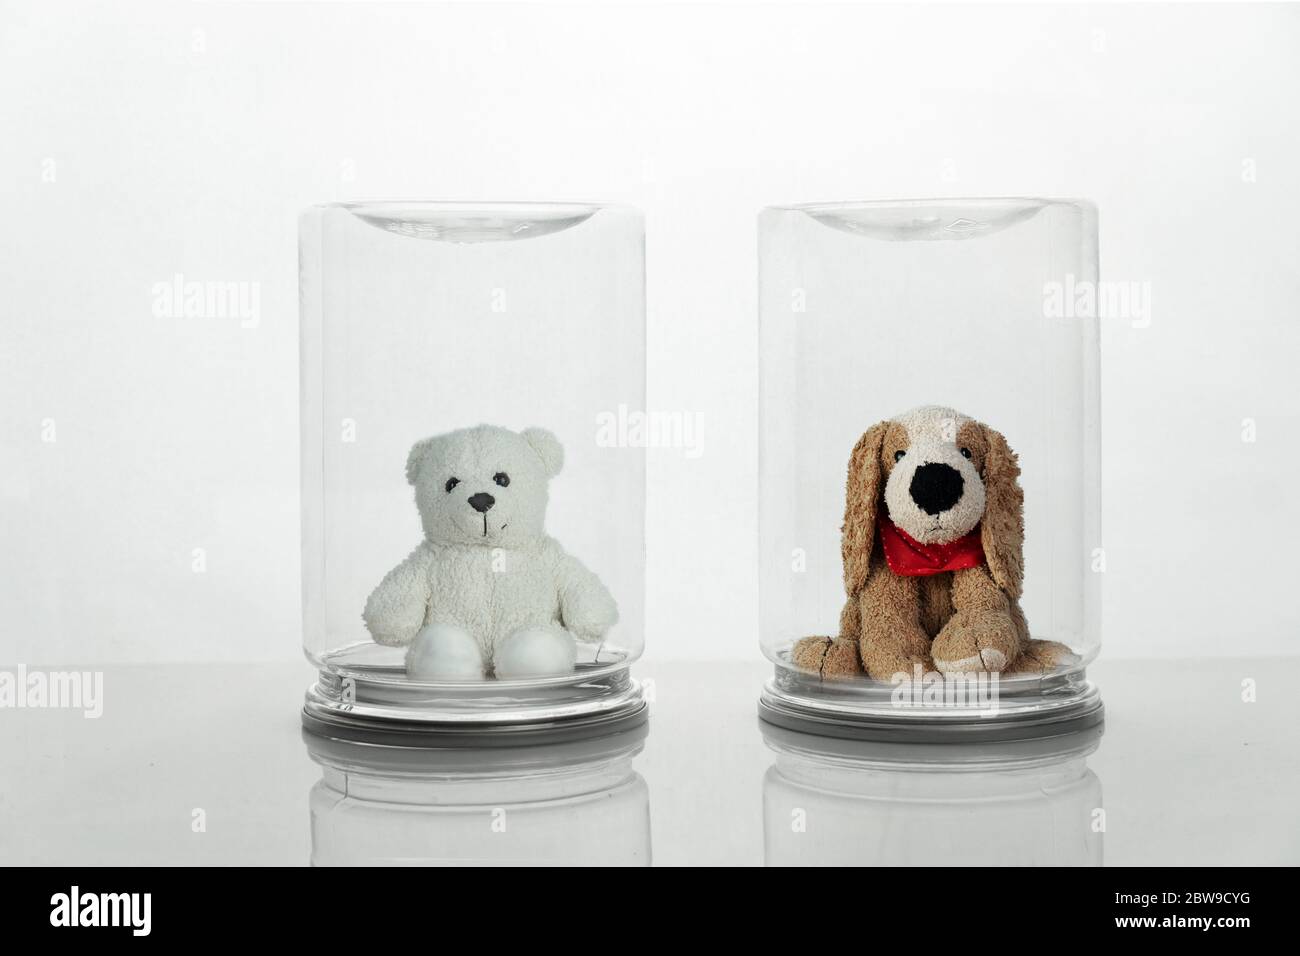 Brauner Hund und weißer Bär flauschige Puppe schützen durch Transparenz Glasschutz in sozialen und physischen Distanzierung für covid-19 Virus Konzept medizinische hea Stockfoto